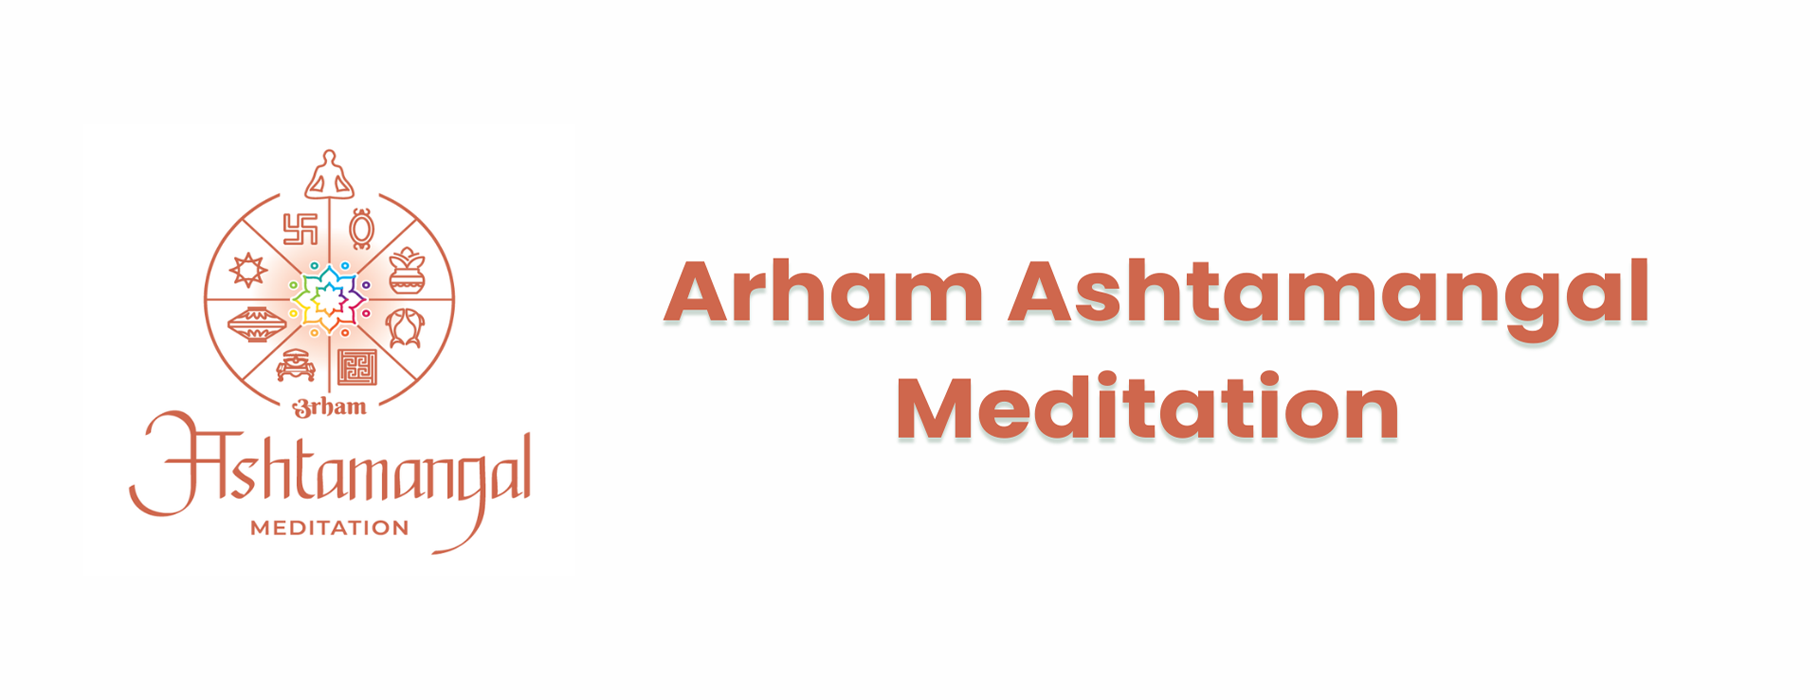 Arham Ashtamangal